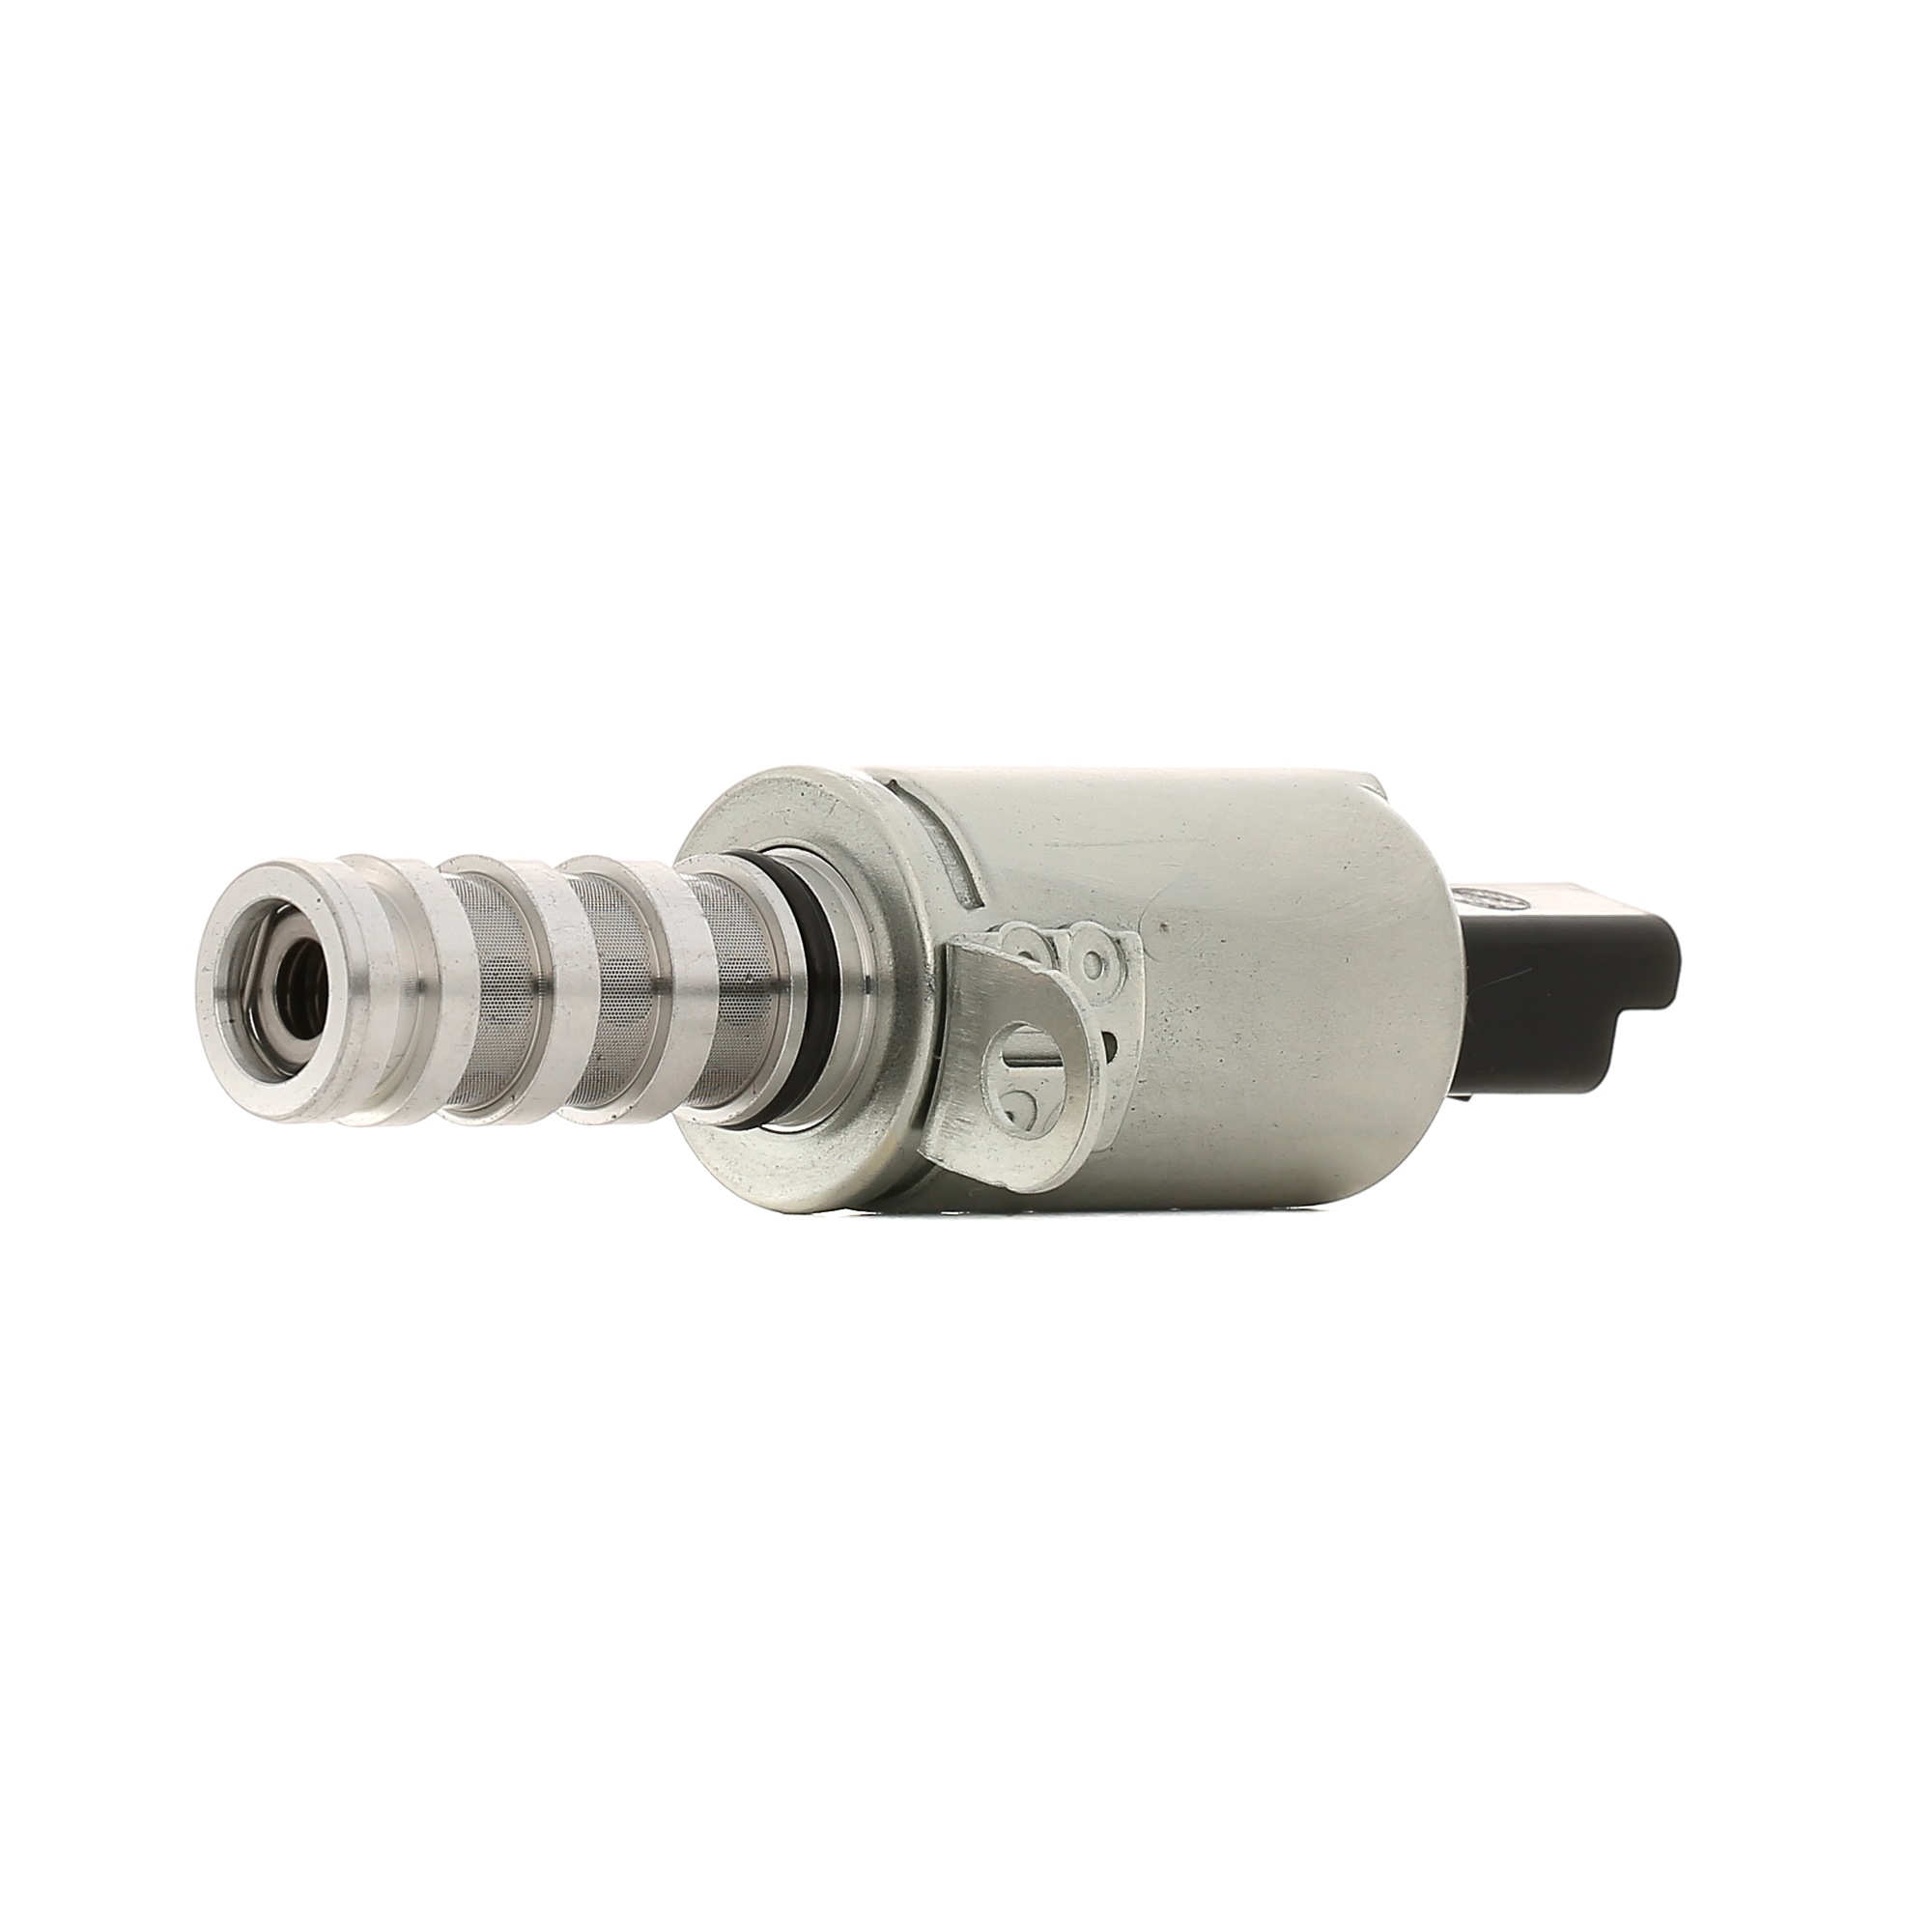 Buy Camshaft adjustment valve PIERBURG 7.06117.45.0 - Sensors, relays, control units parts OPEL GRANDLAND X online